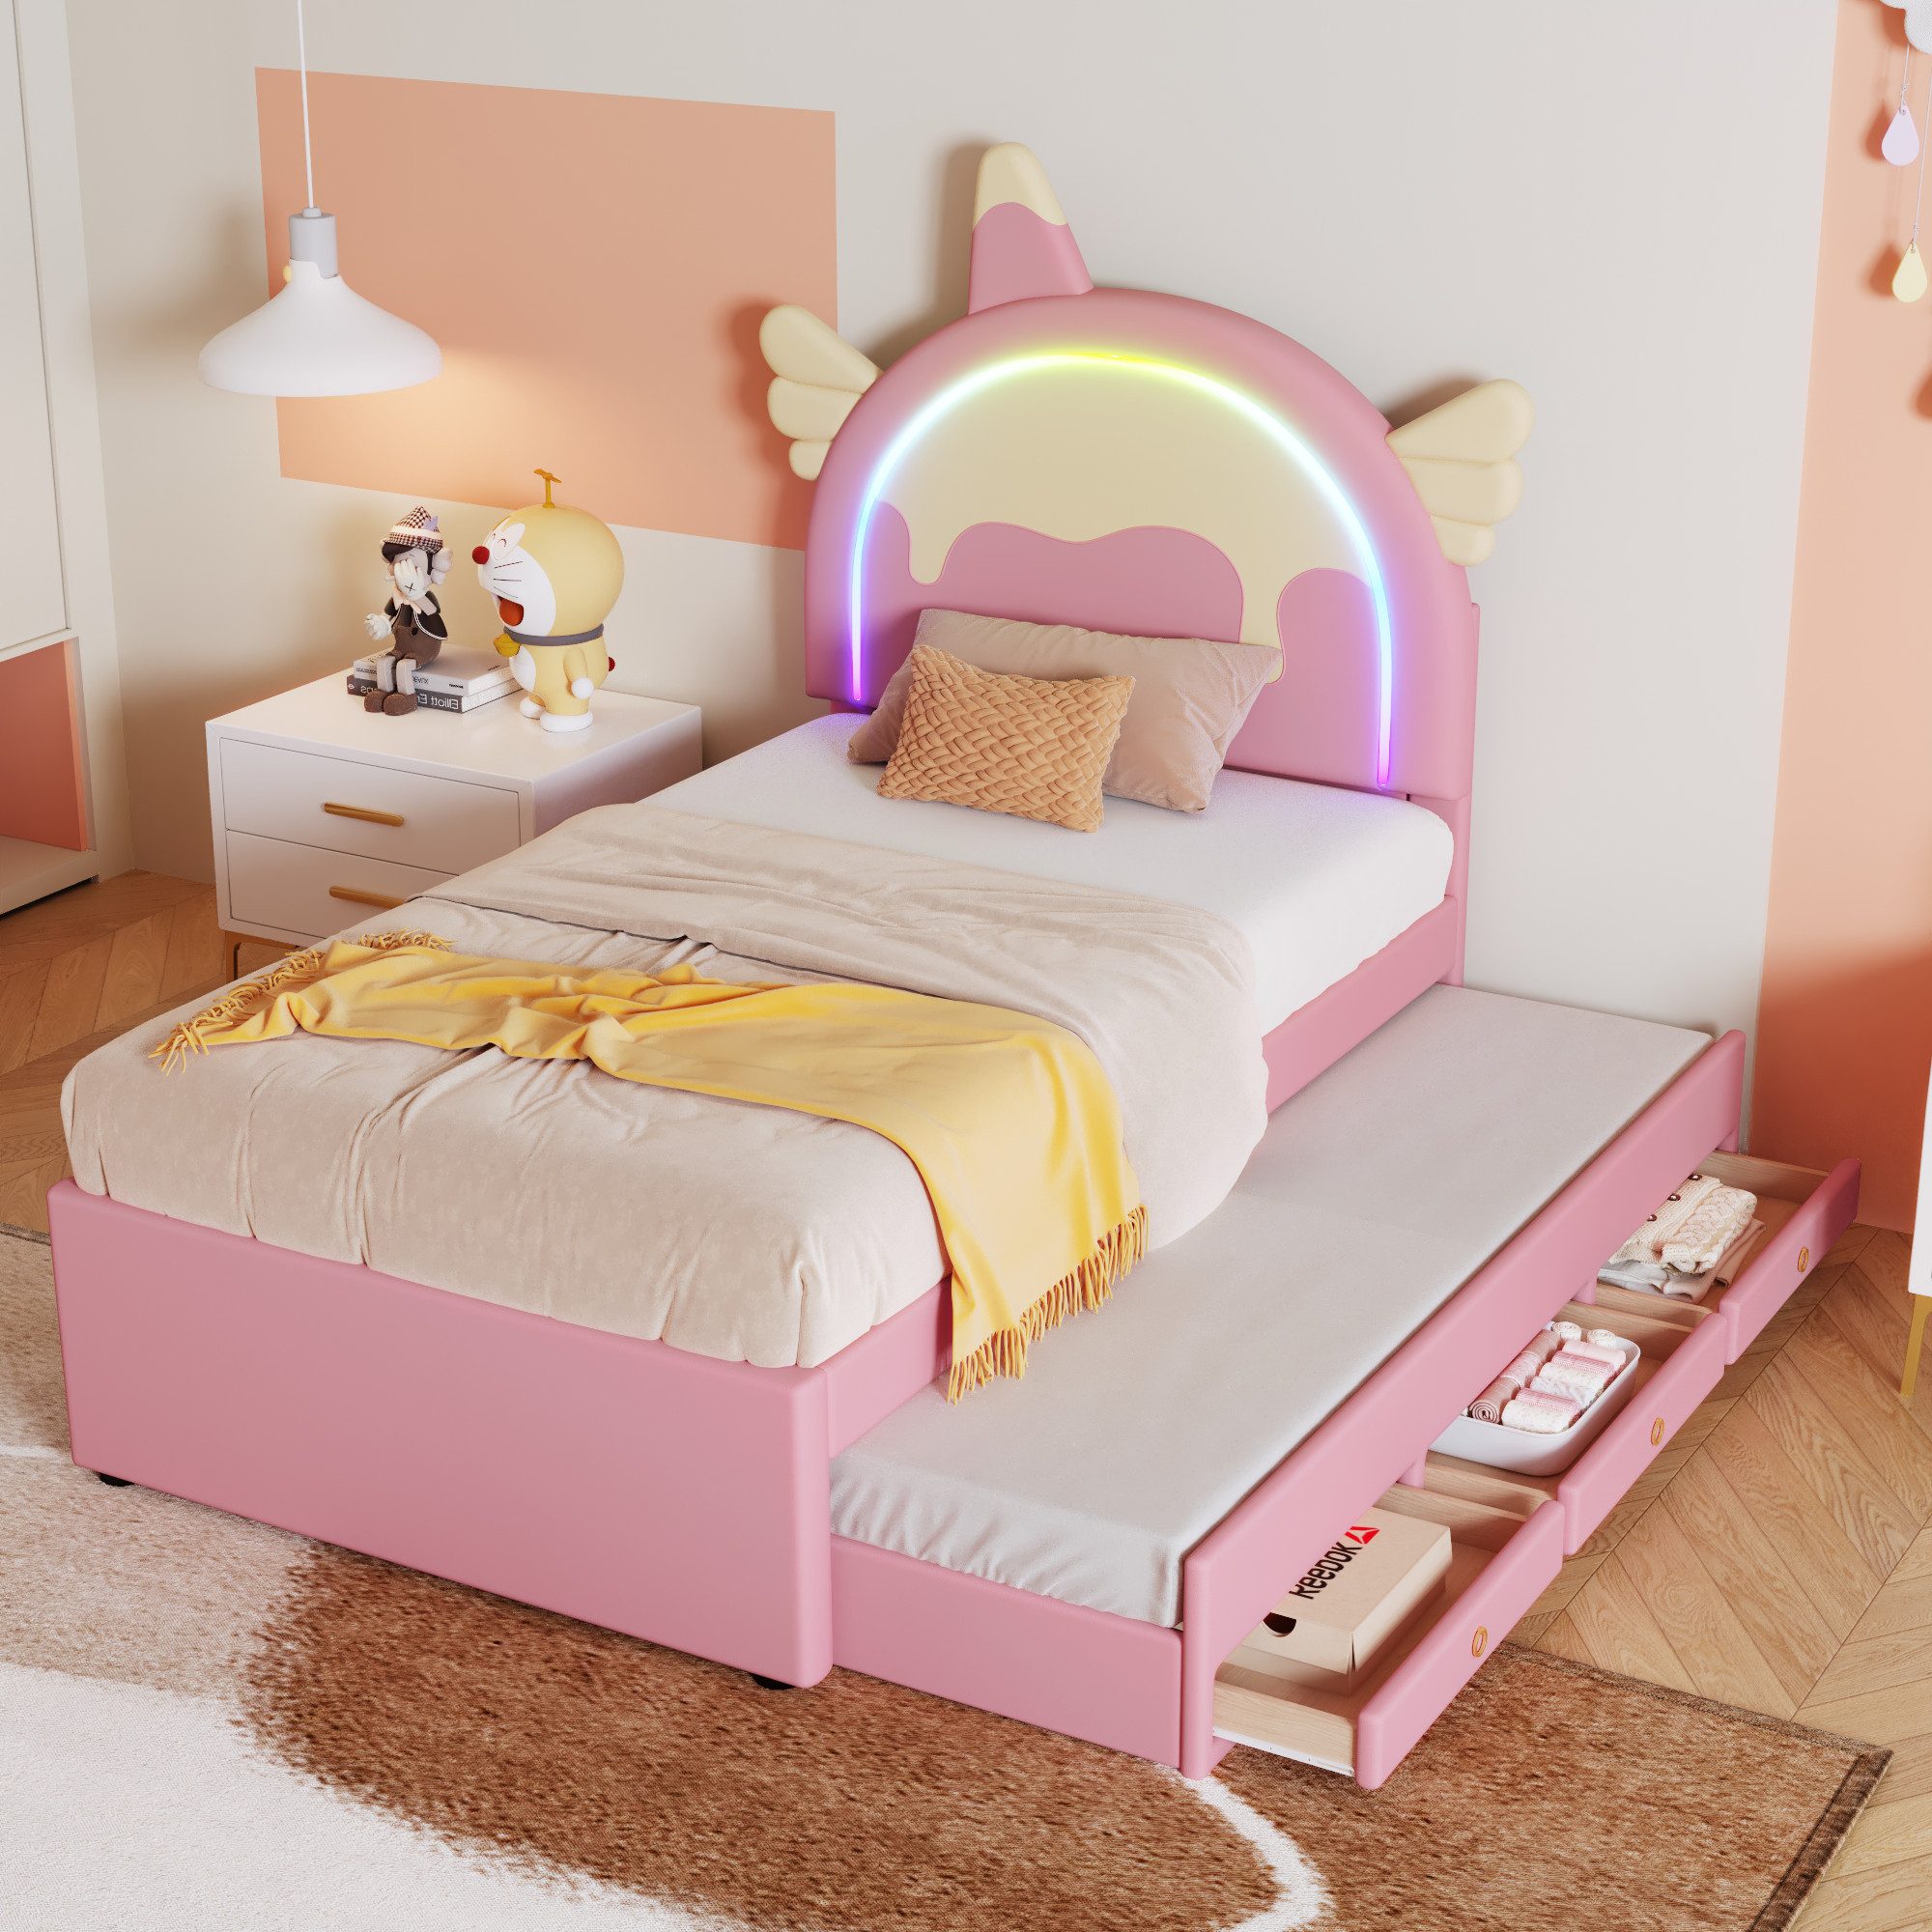 REDOM Kinderbett ausgestattet mit ausziehbares rollbett, kunstleder-Material (Einhornform, 90*200cm), ohne Matratze